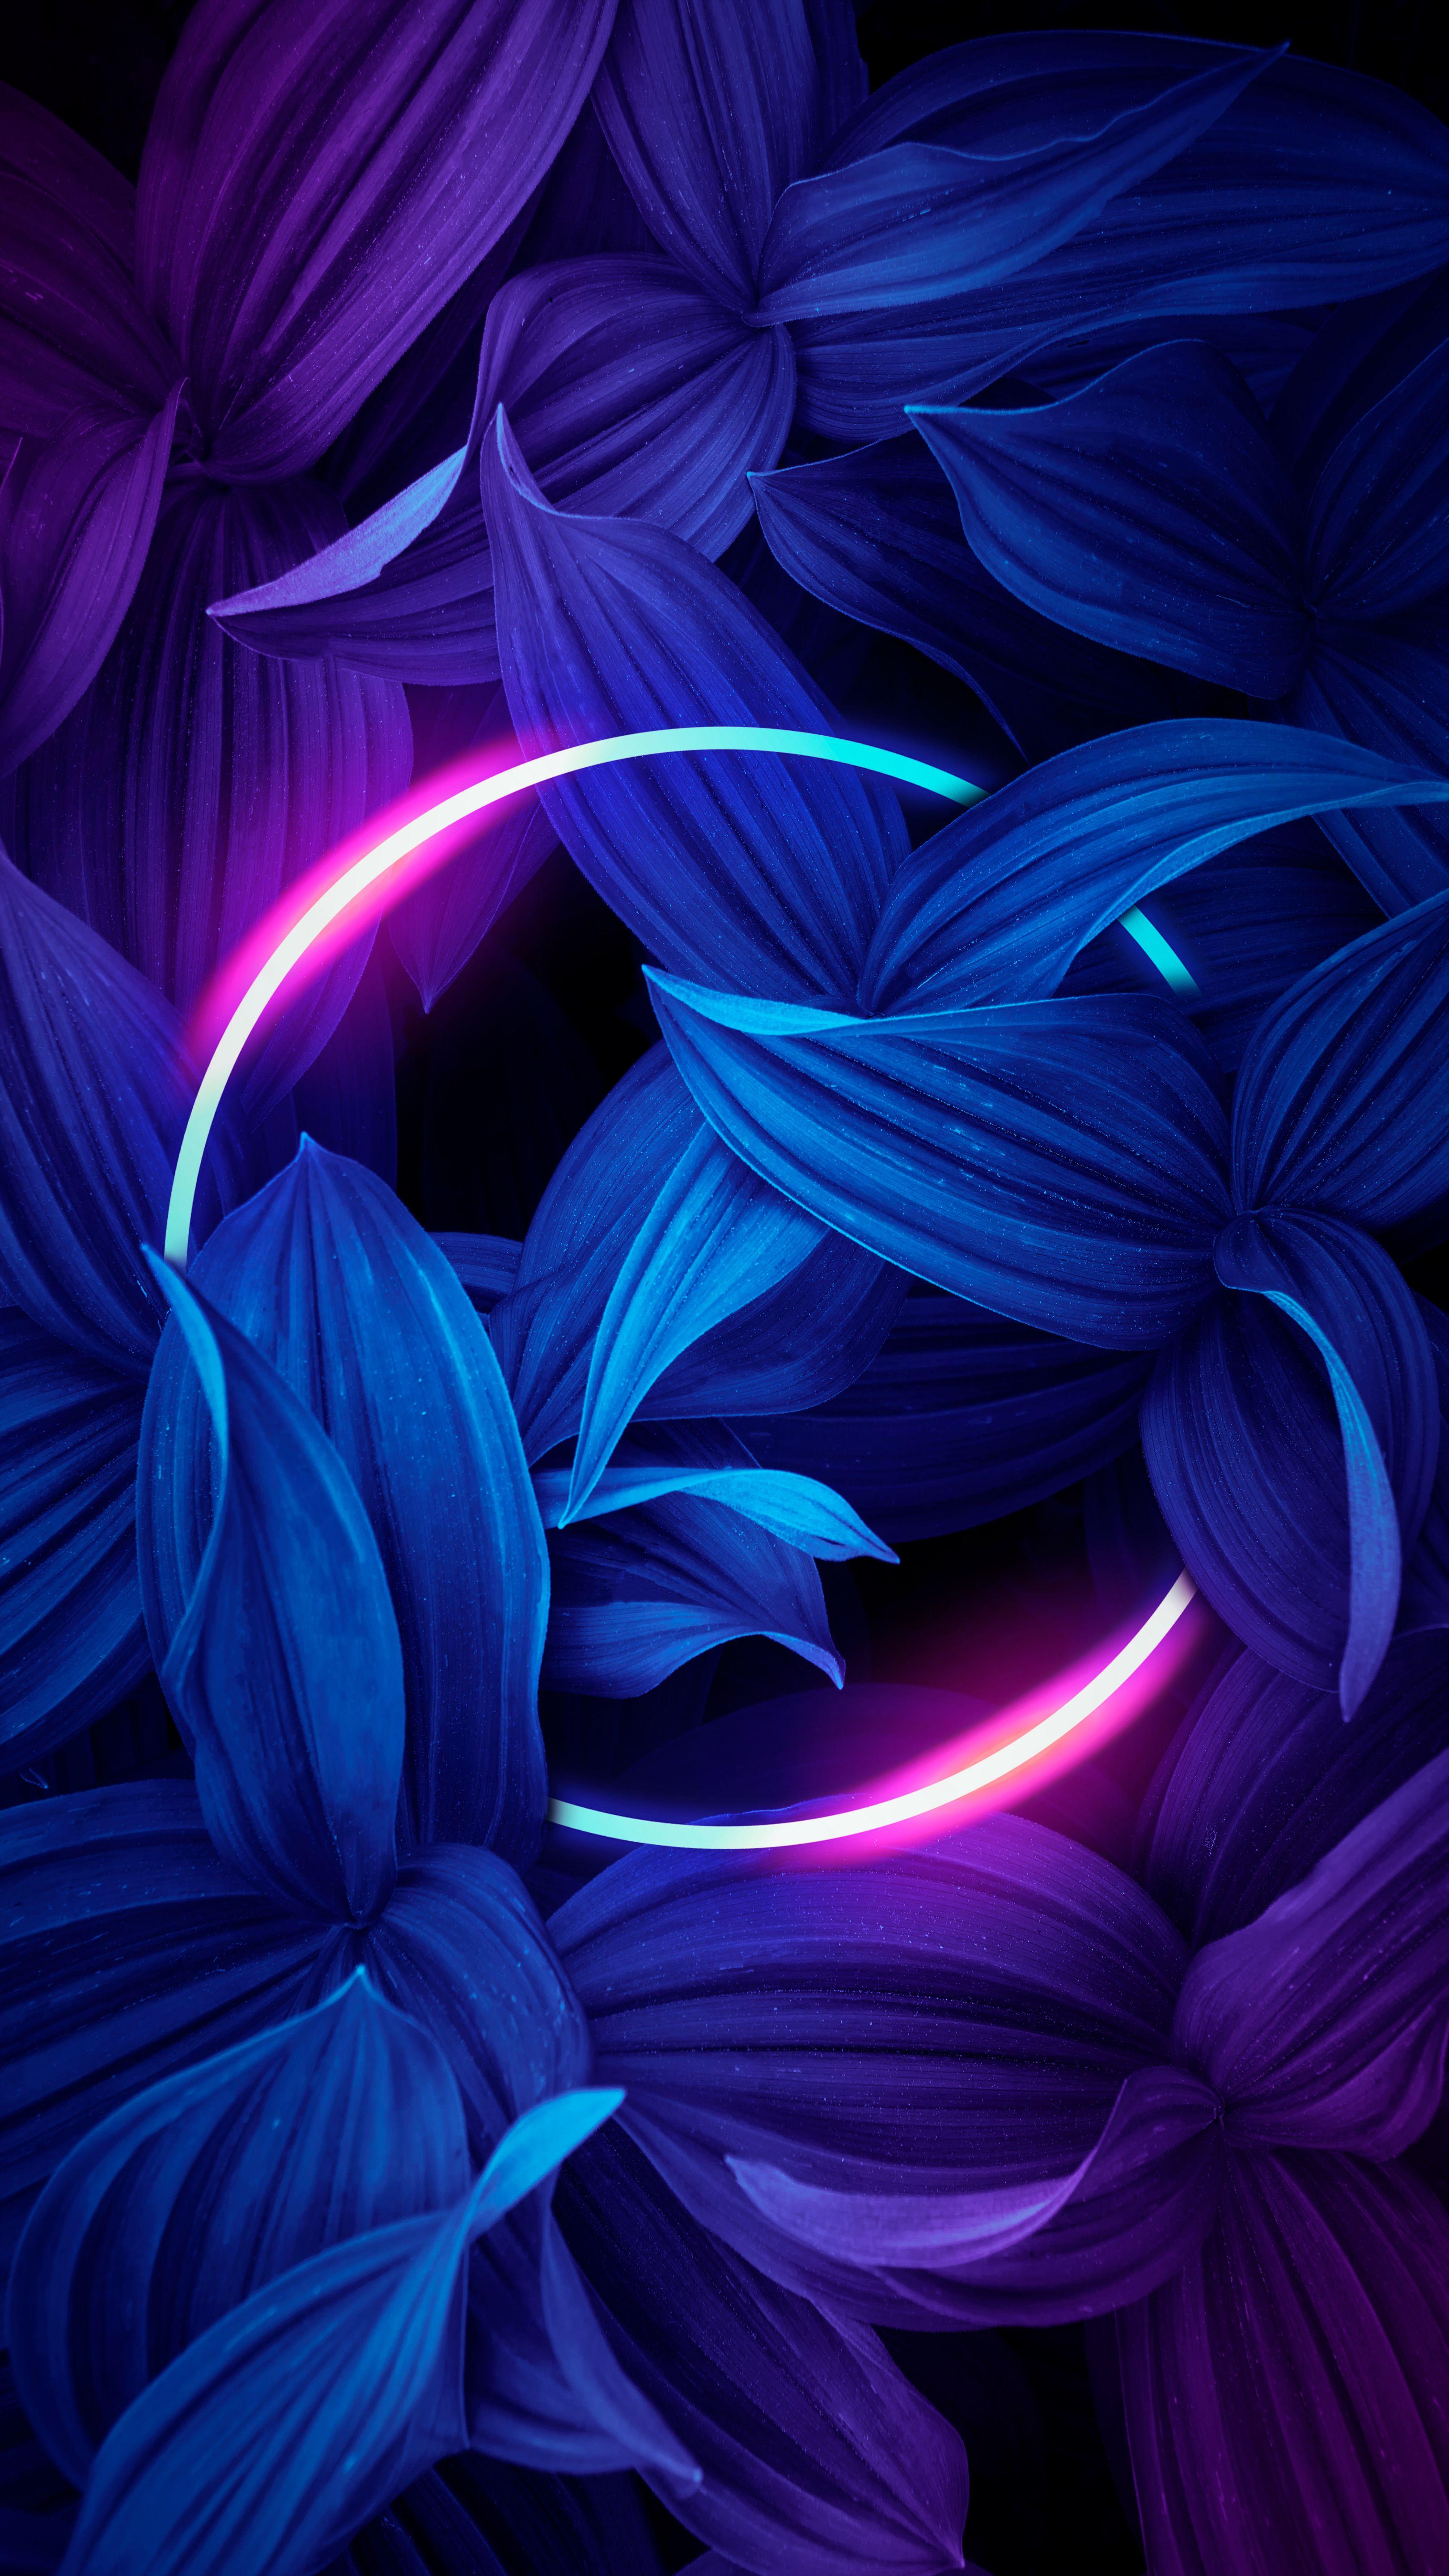 3240 x 5760 · jpeg - Neon light | Iphone wallpaper photos, Nature iphone wallpaper ...